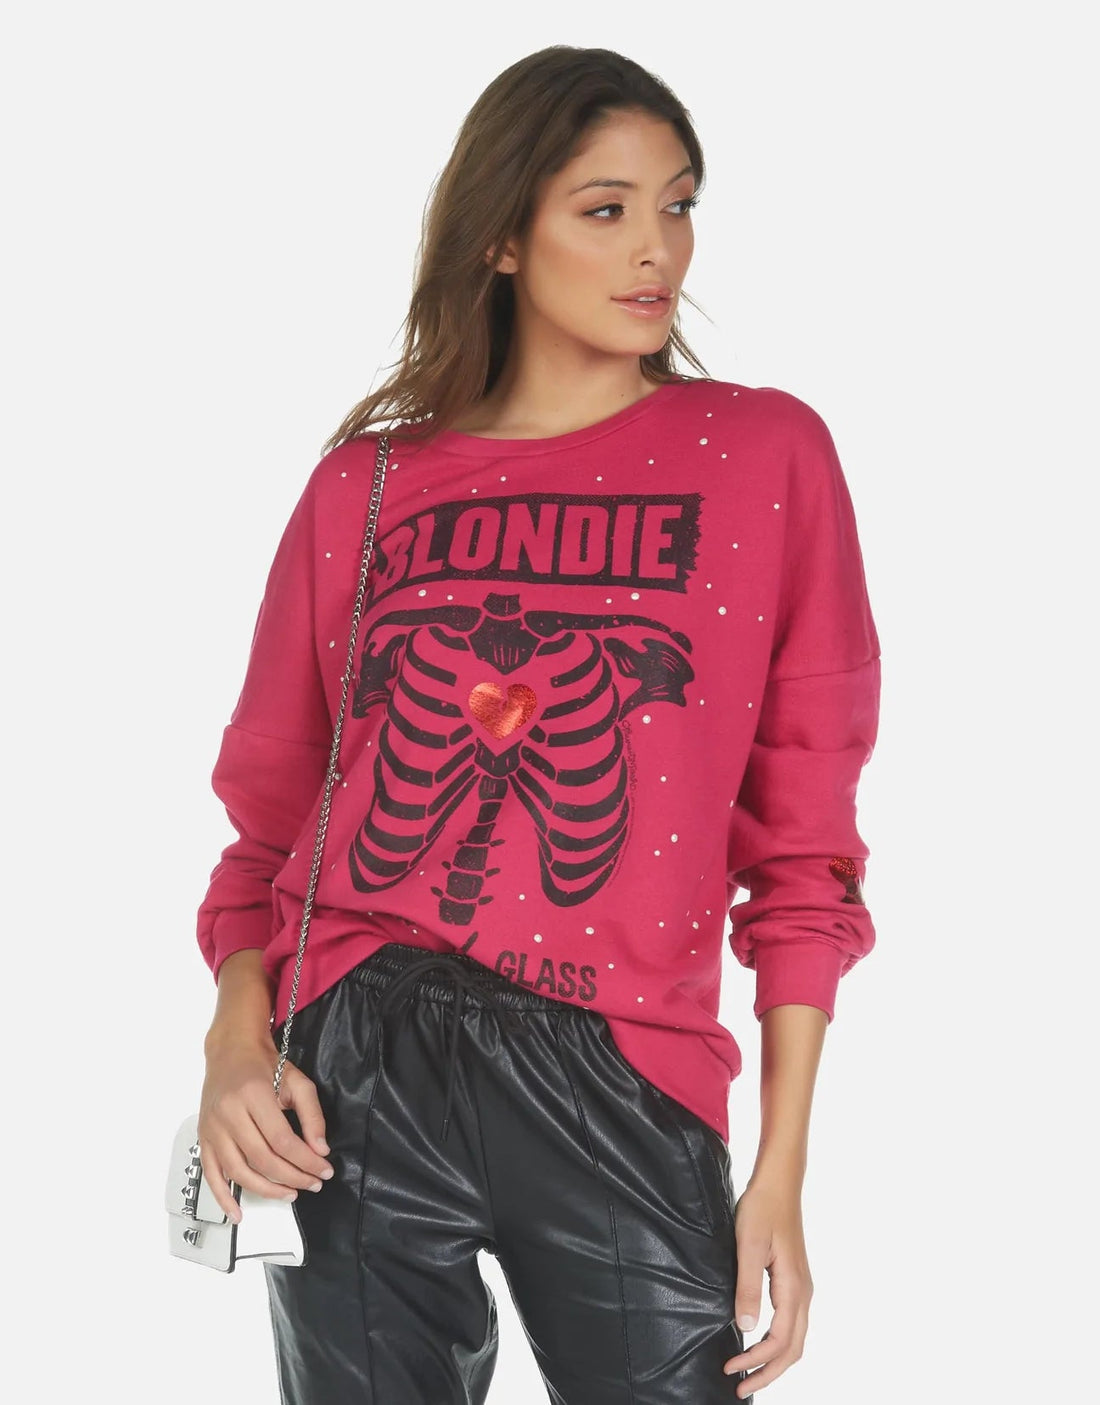 Shop Lauren Moshi Sierra Blondie Heart Sweatshirt - Premium Sweater from Lauren Moshi Online now at Spoiled Brat 